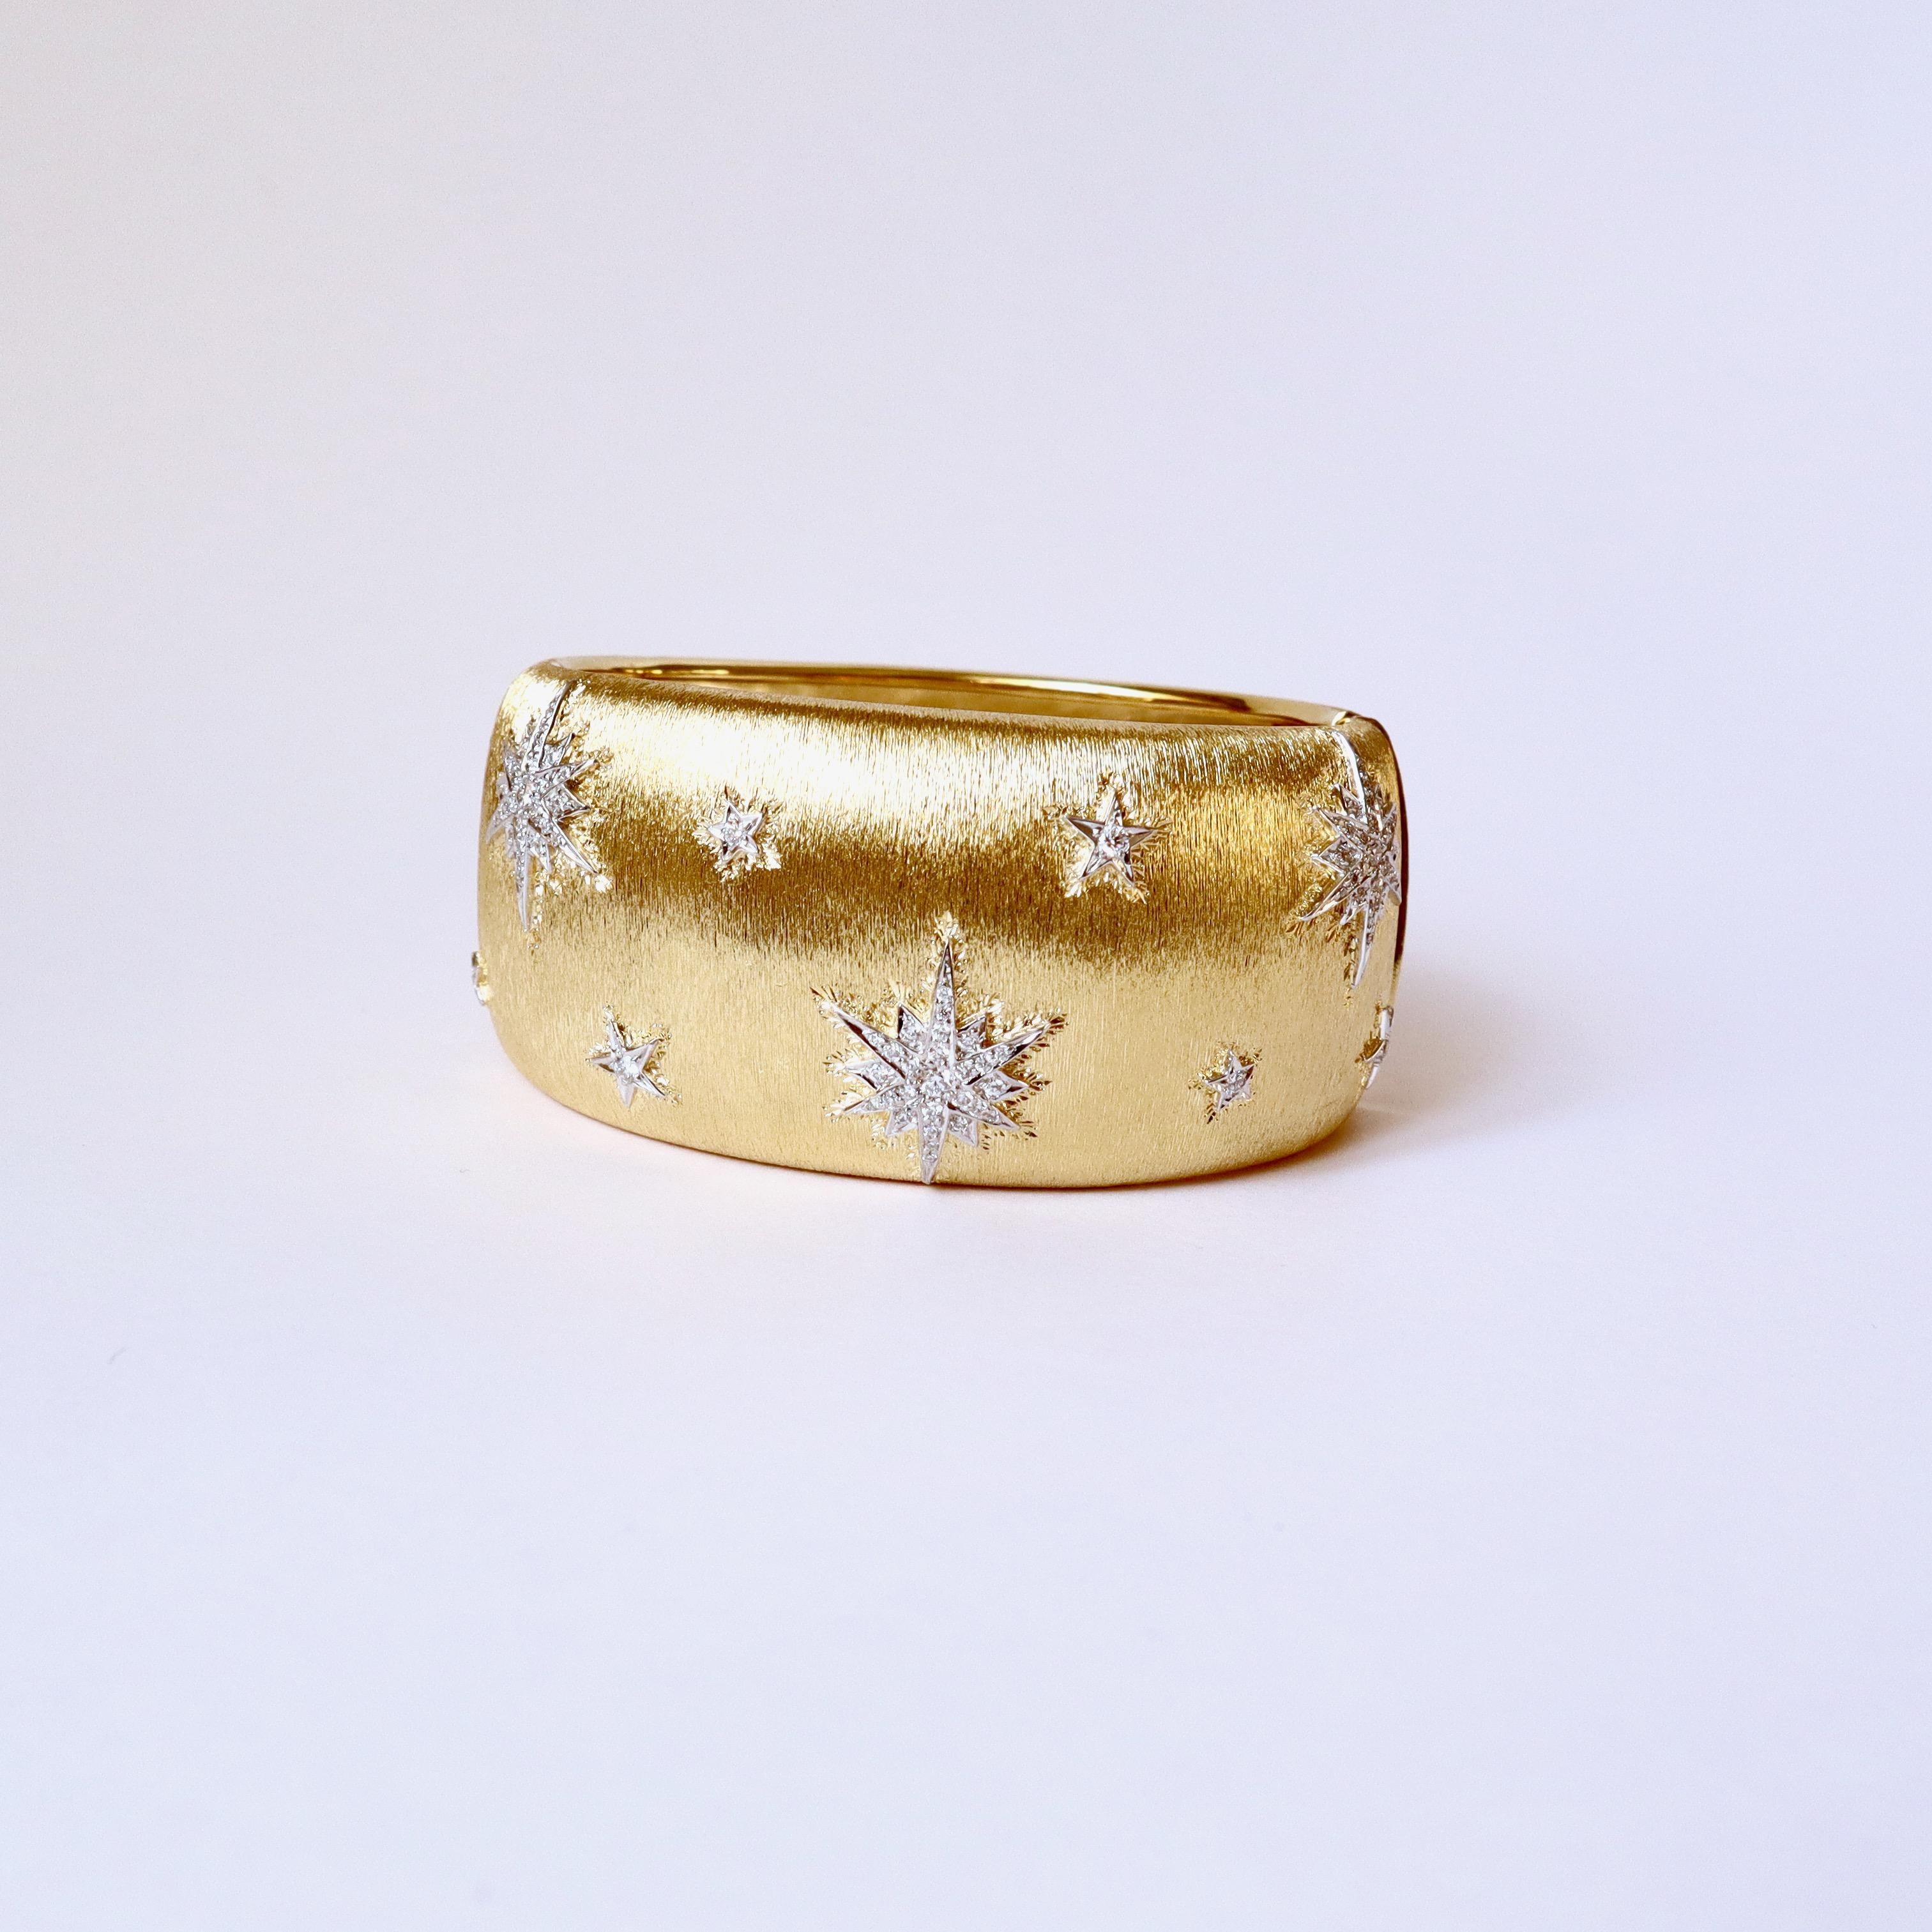 Bracelet en or jaune, or blanc 18 carats et diamants avec motif étoile (type Buccellati).
Bracelet rigide ouvrant en or jaune 18 kt, bombé cannelé avec motif étoile en or blanc 18 kt appliqué, serti de diamants, ouvrant.
Poids du diamant : 0,8